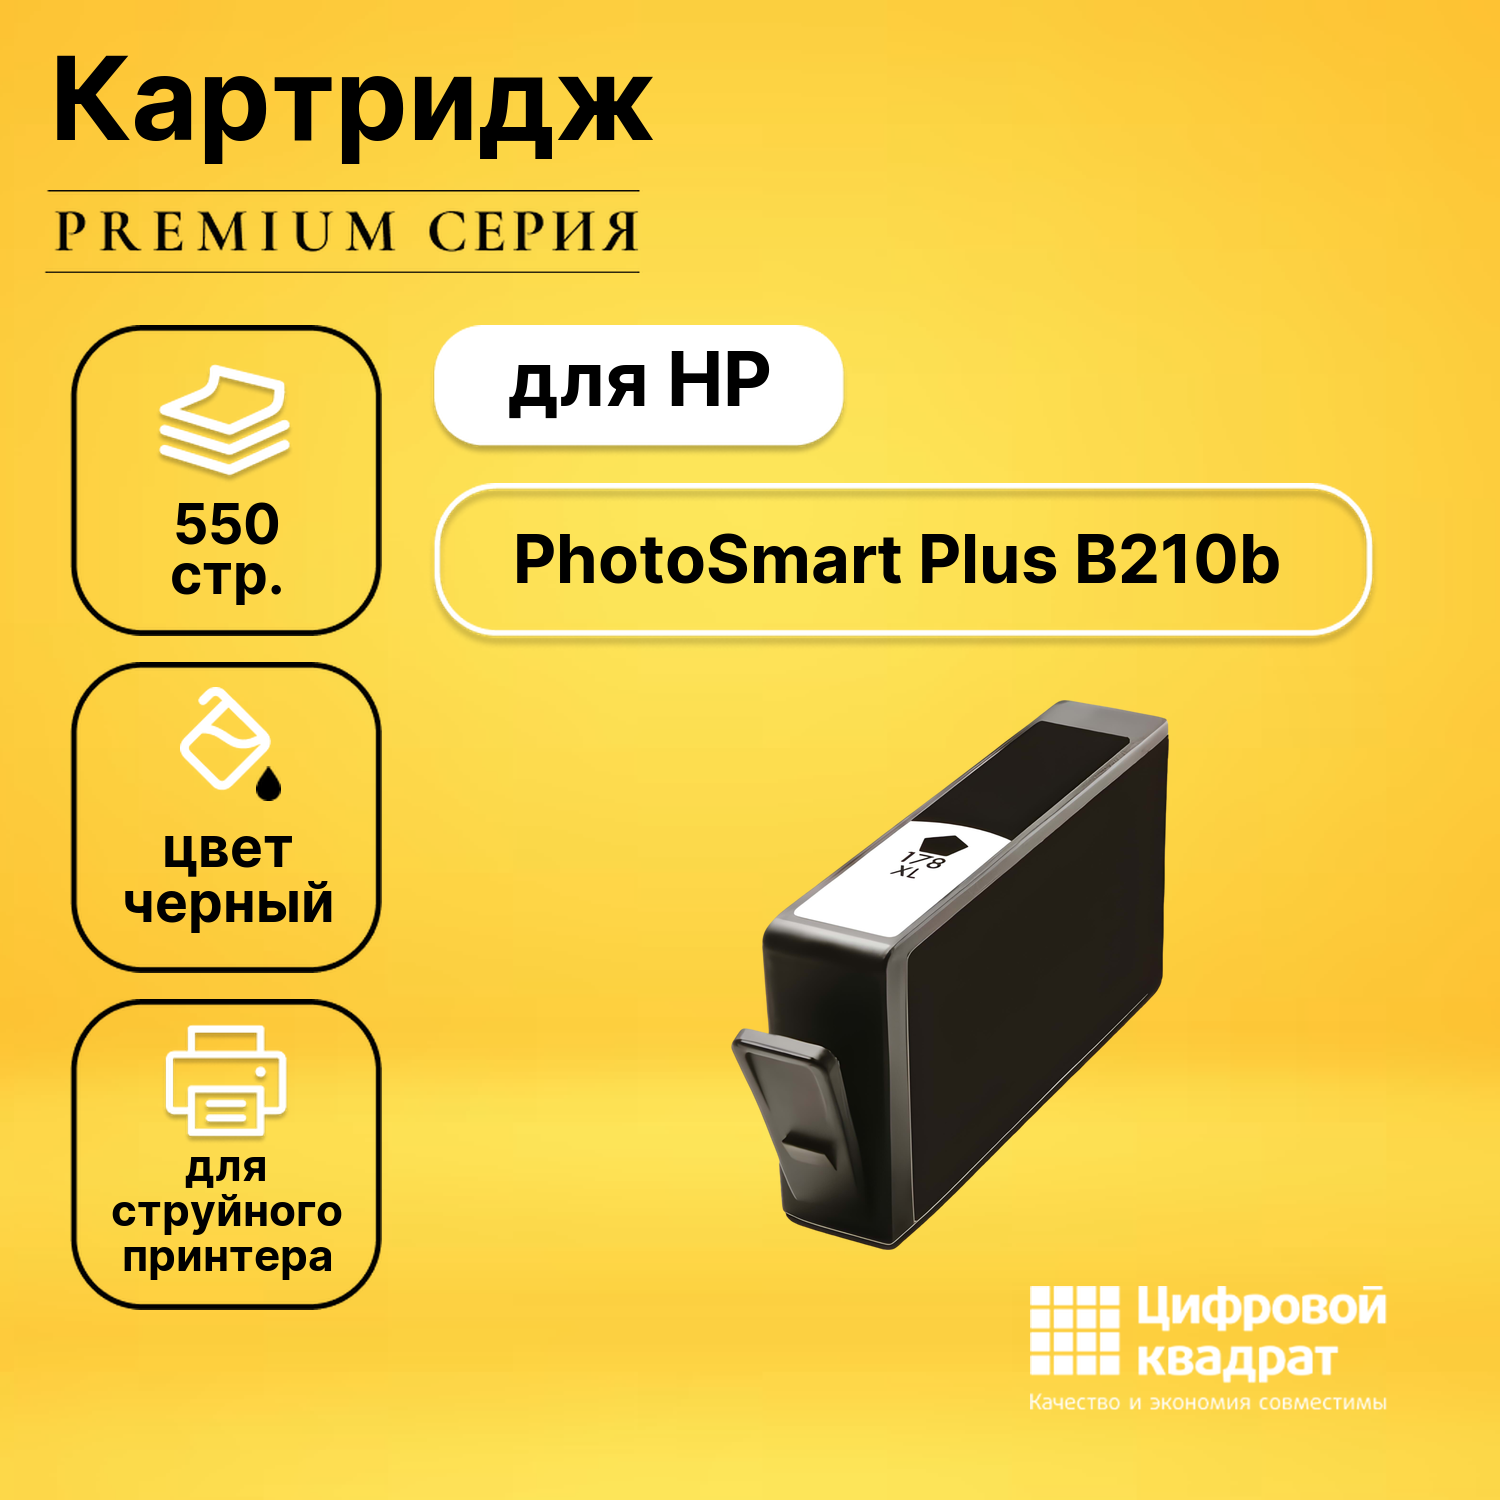 Картридж DS для HP PhotoSmart Plus B210B совместимый